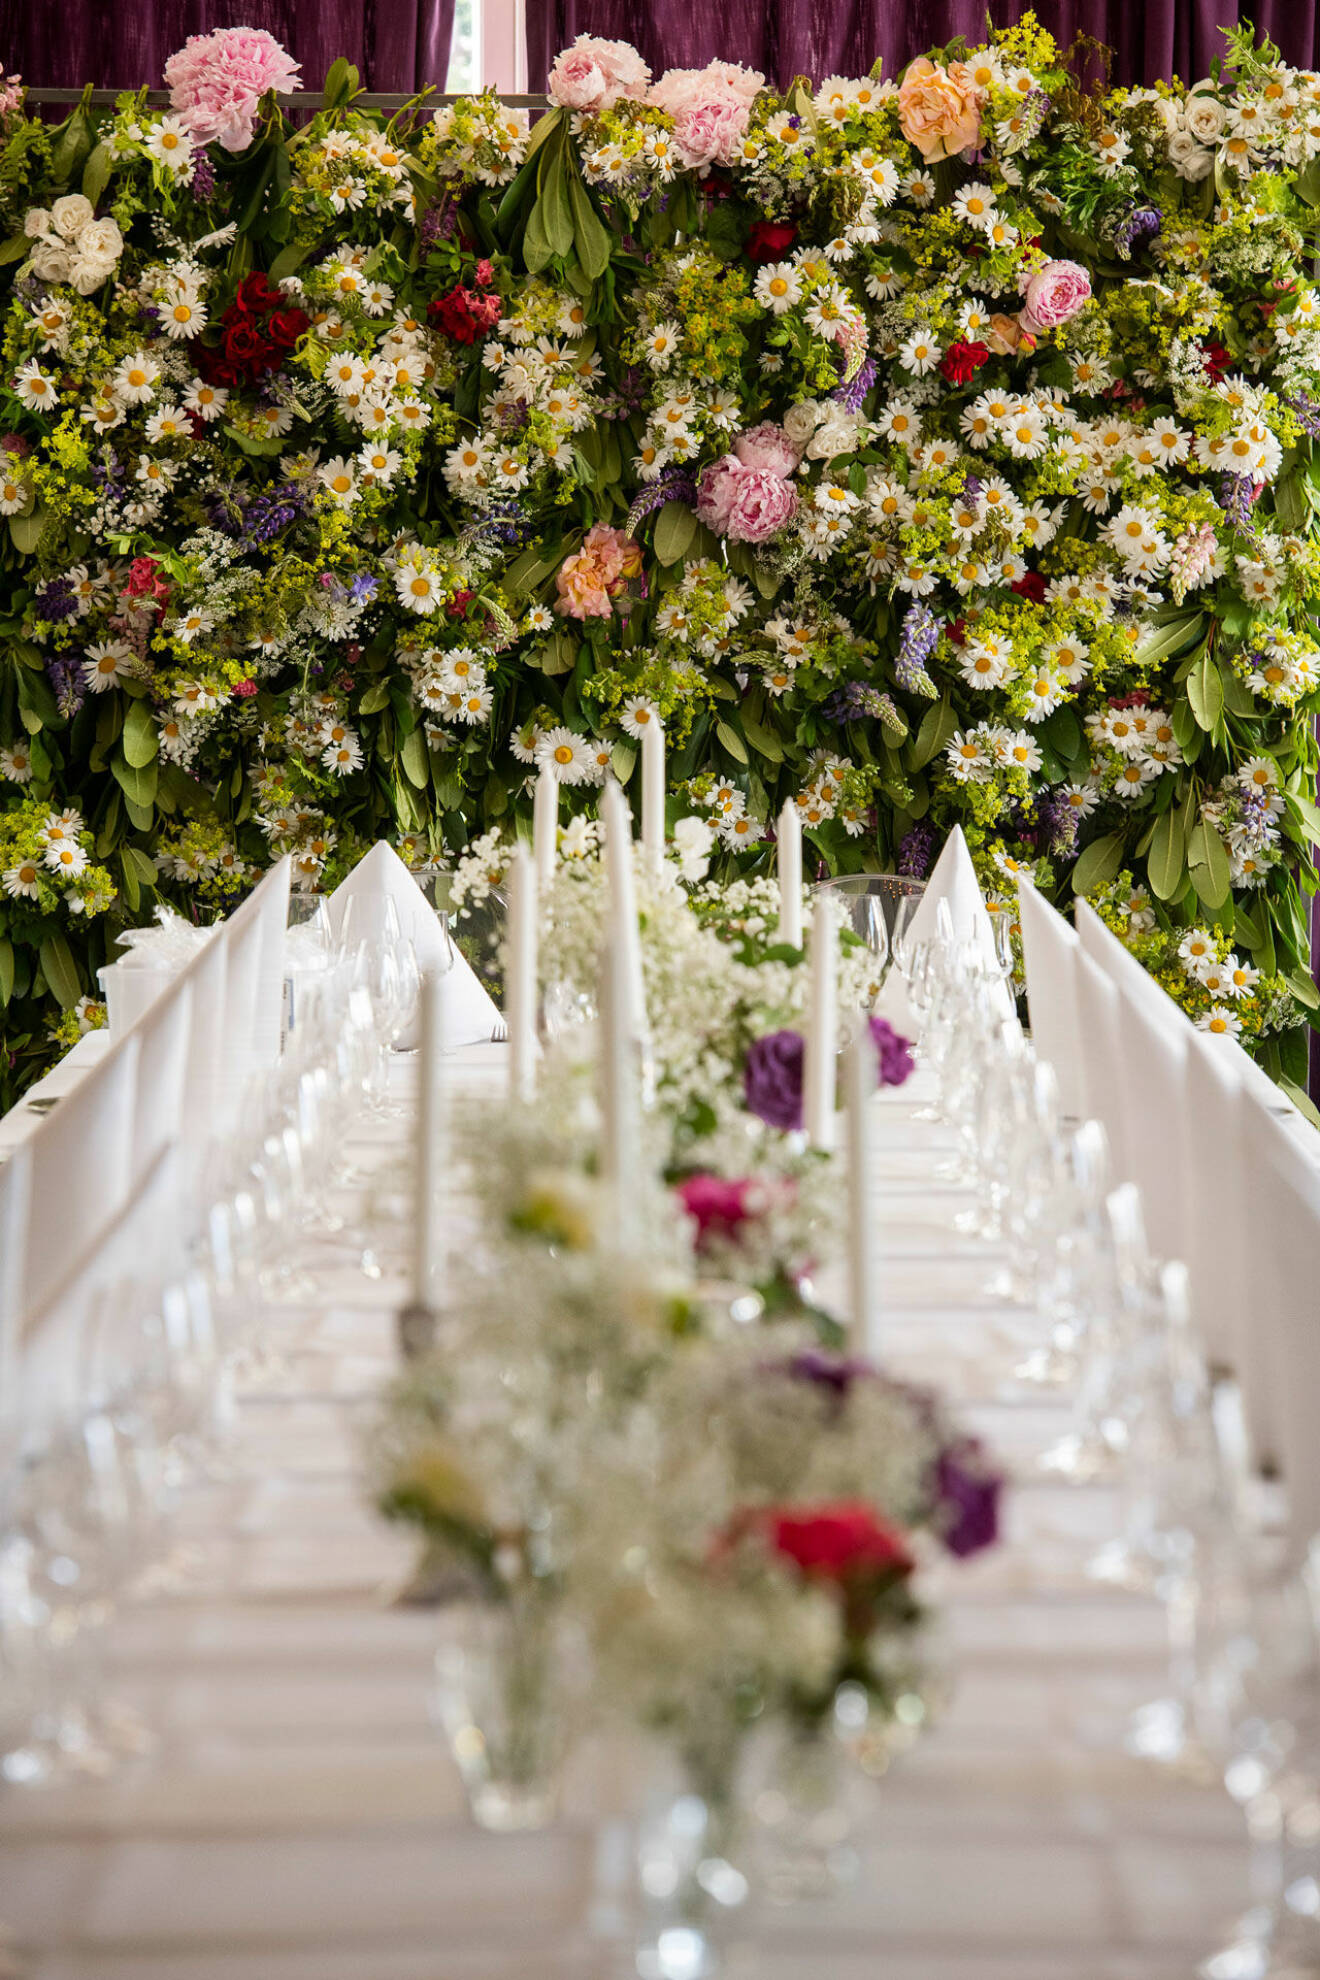 Festens alla blomsteruppsättningar har skapats av brudens mamma Lize-Lotte Carlström.